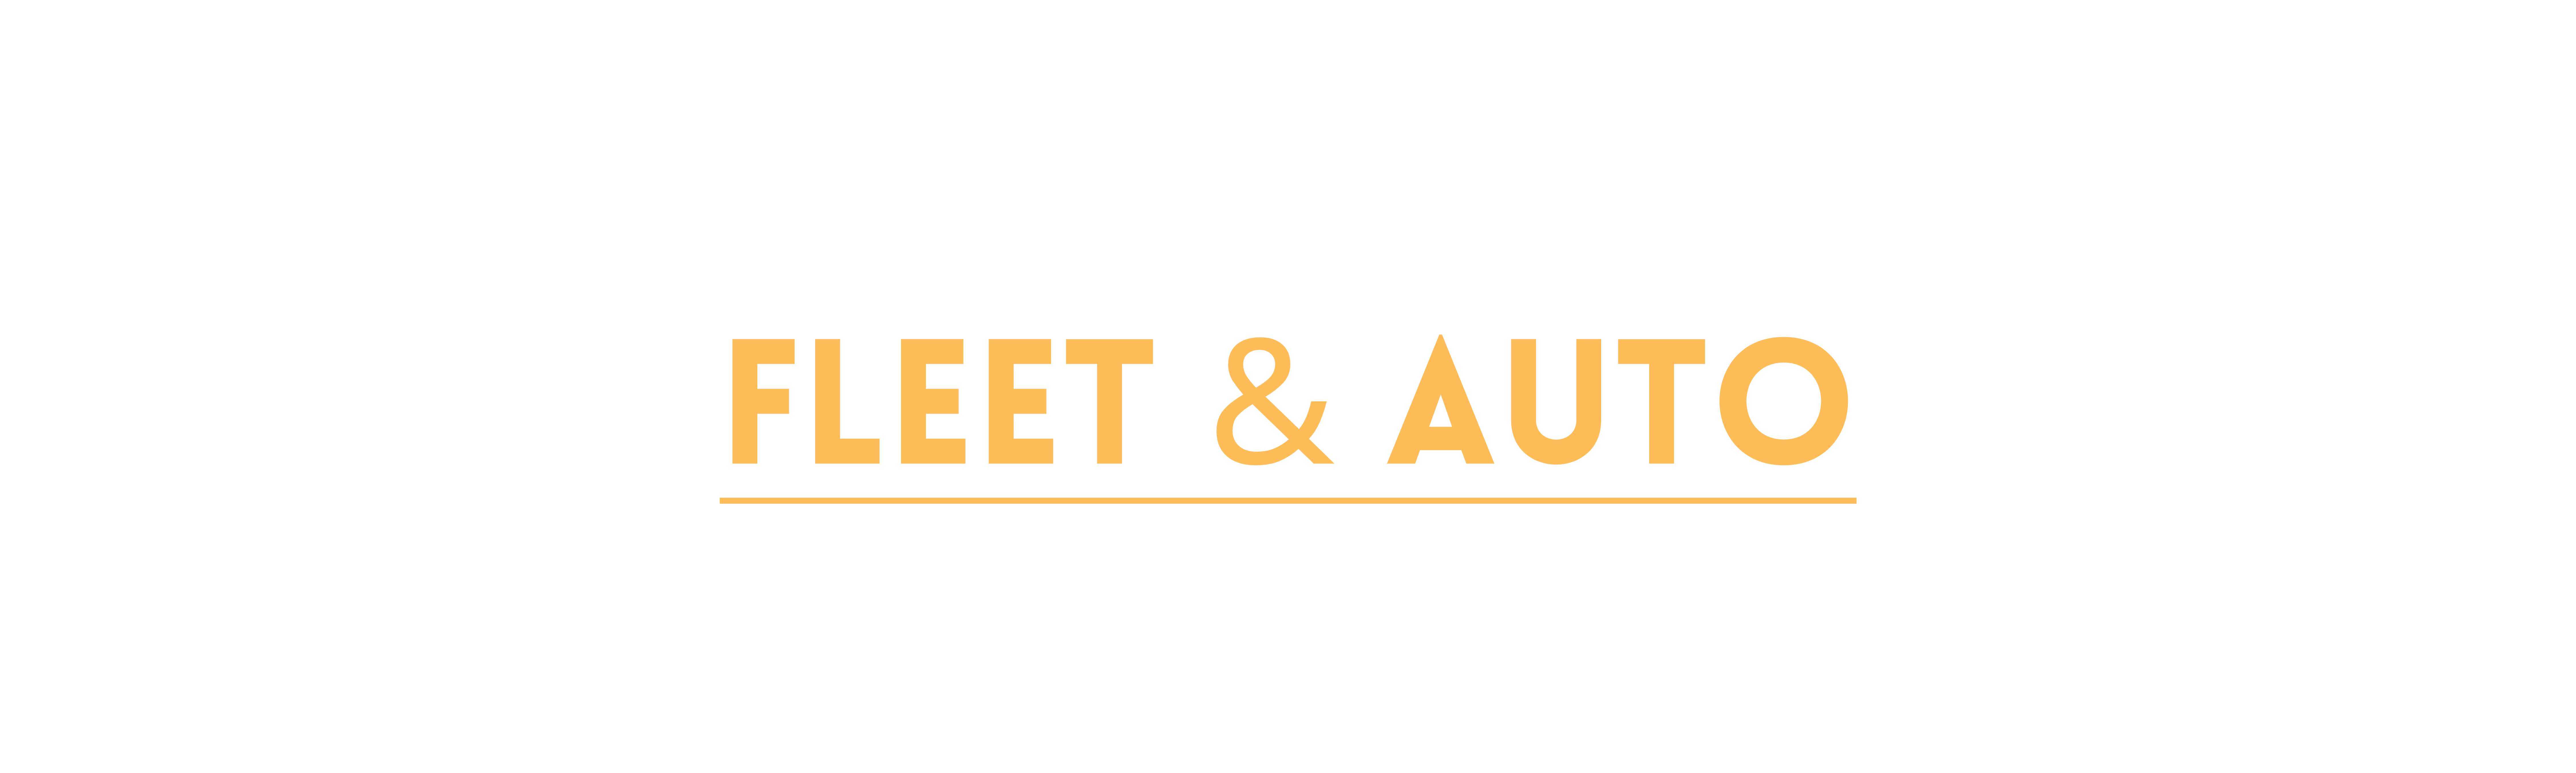 Miami Fleet & Auto